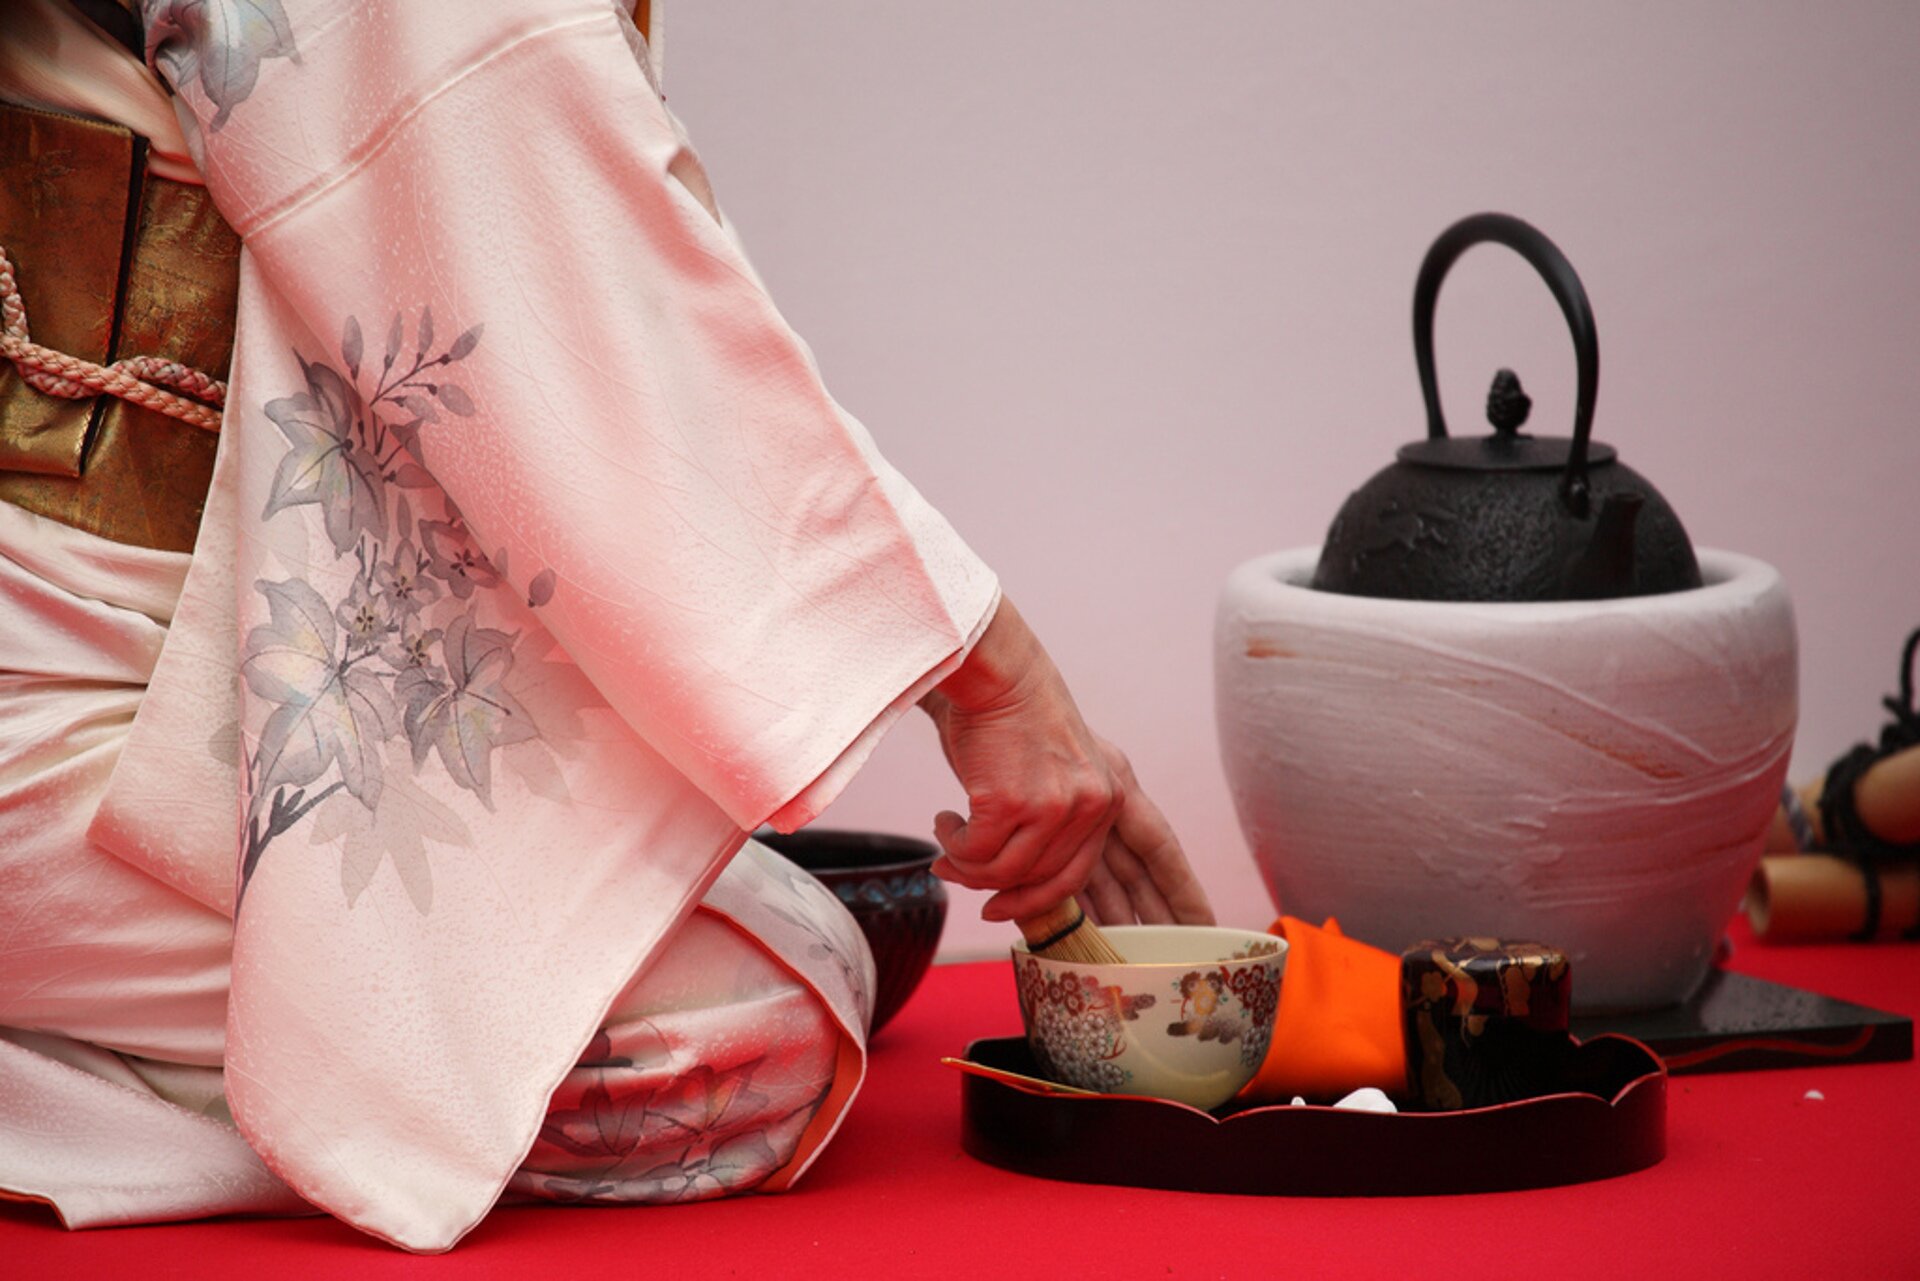 Grafika przedstawia zdjęcie kobiety ubranej w tradycyjny azjatycki strój koloru bladoróżowego z szarymi kwiatami, która przygotowuje herbatę w tradycyjny sposób. Kobieta pokazana jest od pasa w dół i siedzi na kolanach bokiem do kadru. Obok niej znajduje się czarna taca z białą, zdobioną kolorowymi okręgami, porcelanową filiżanką. Za tacą ustawiony jest biały kosz, na którym jest czarny dzbanek z herbatą.